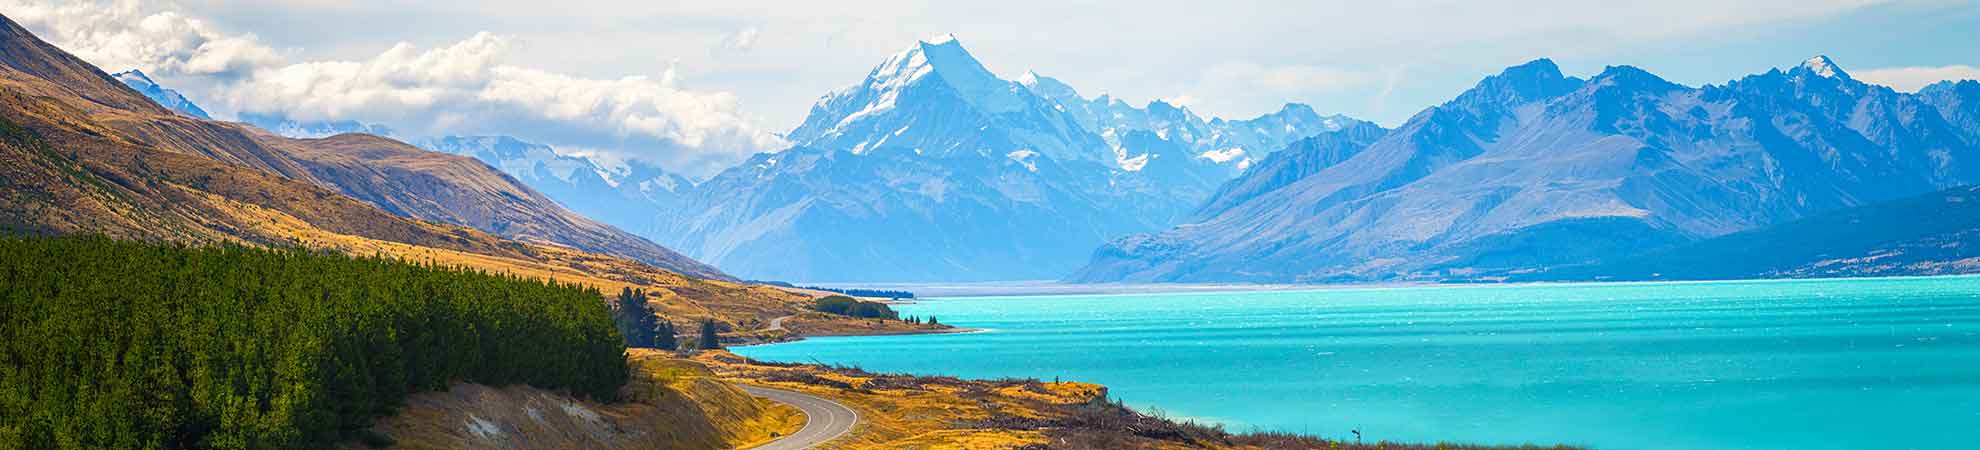 Comment aller en Nouvelle-Zélande pas cher et faire un voyage de rêve ?